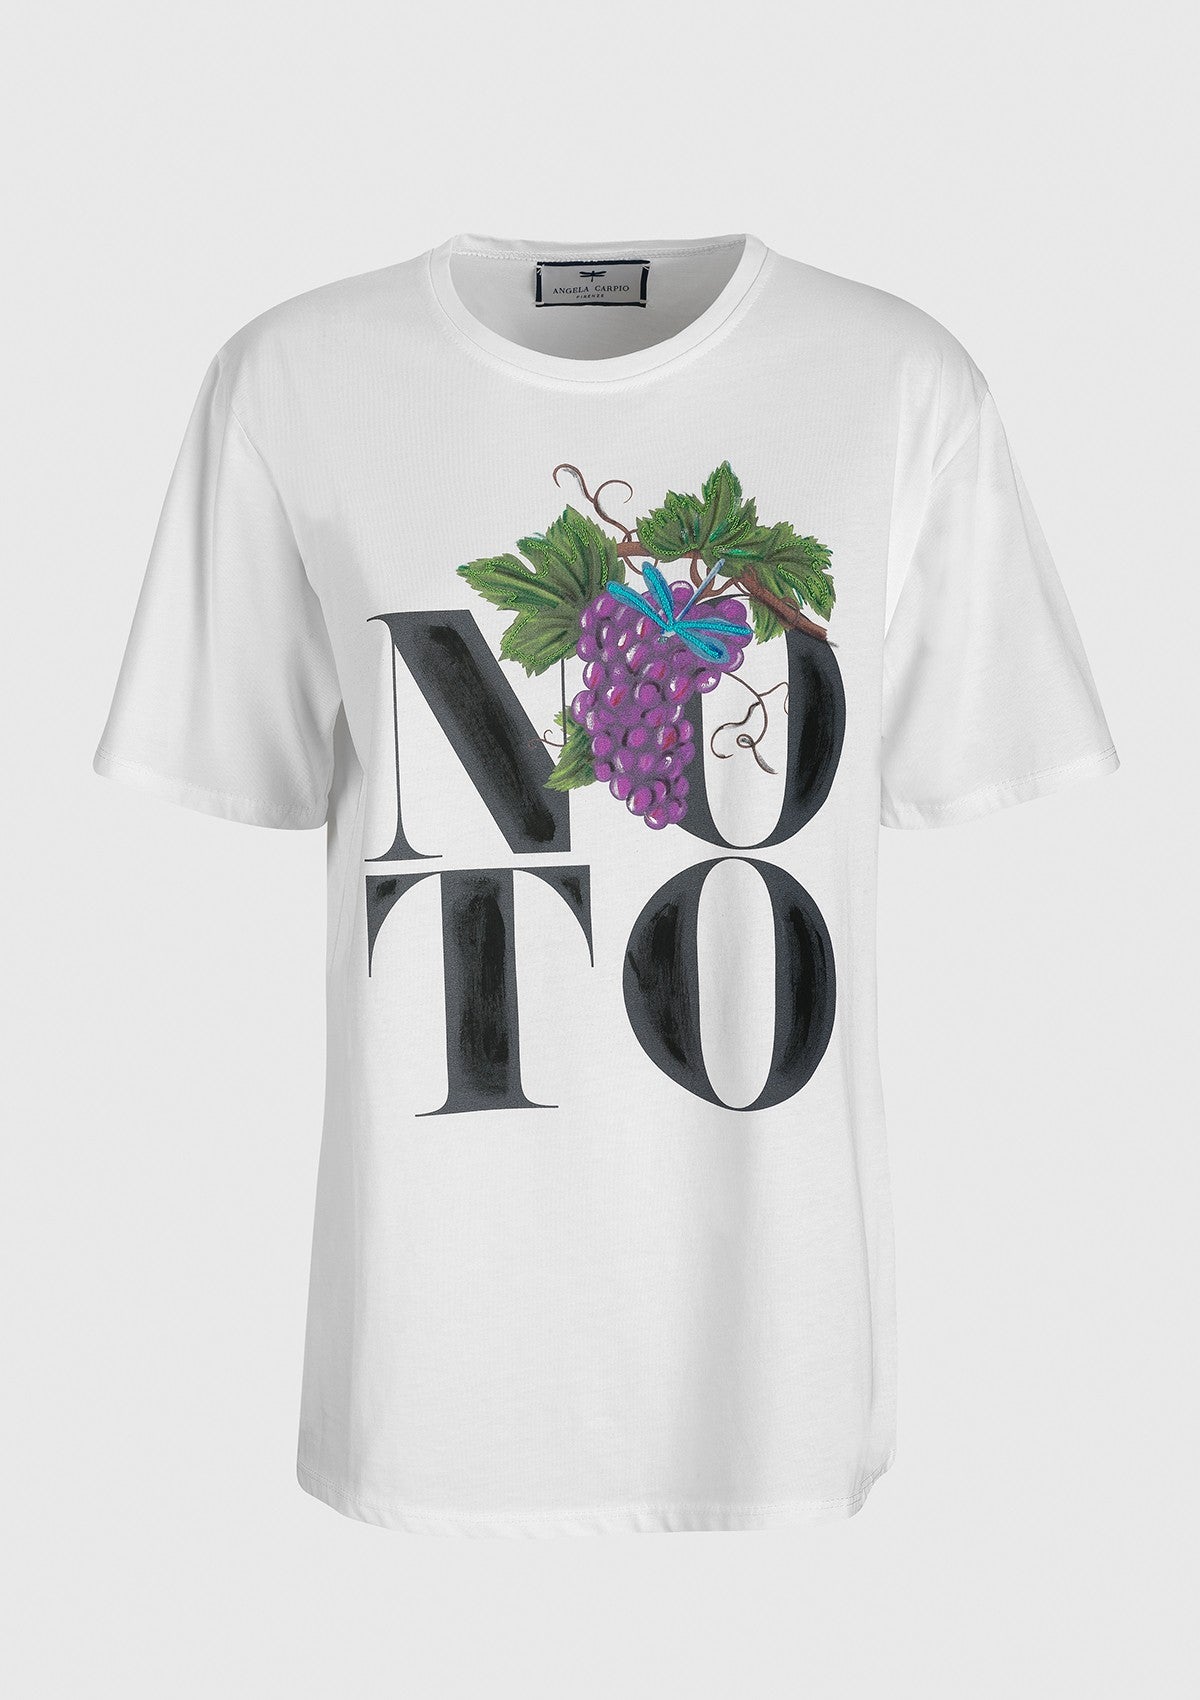 Noto t-shirt